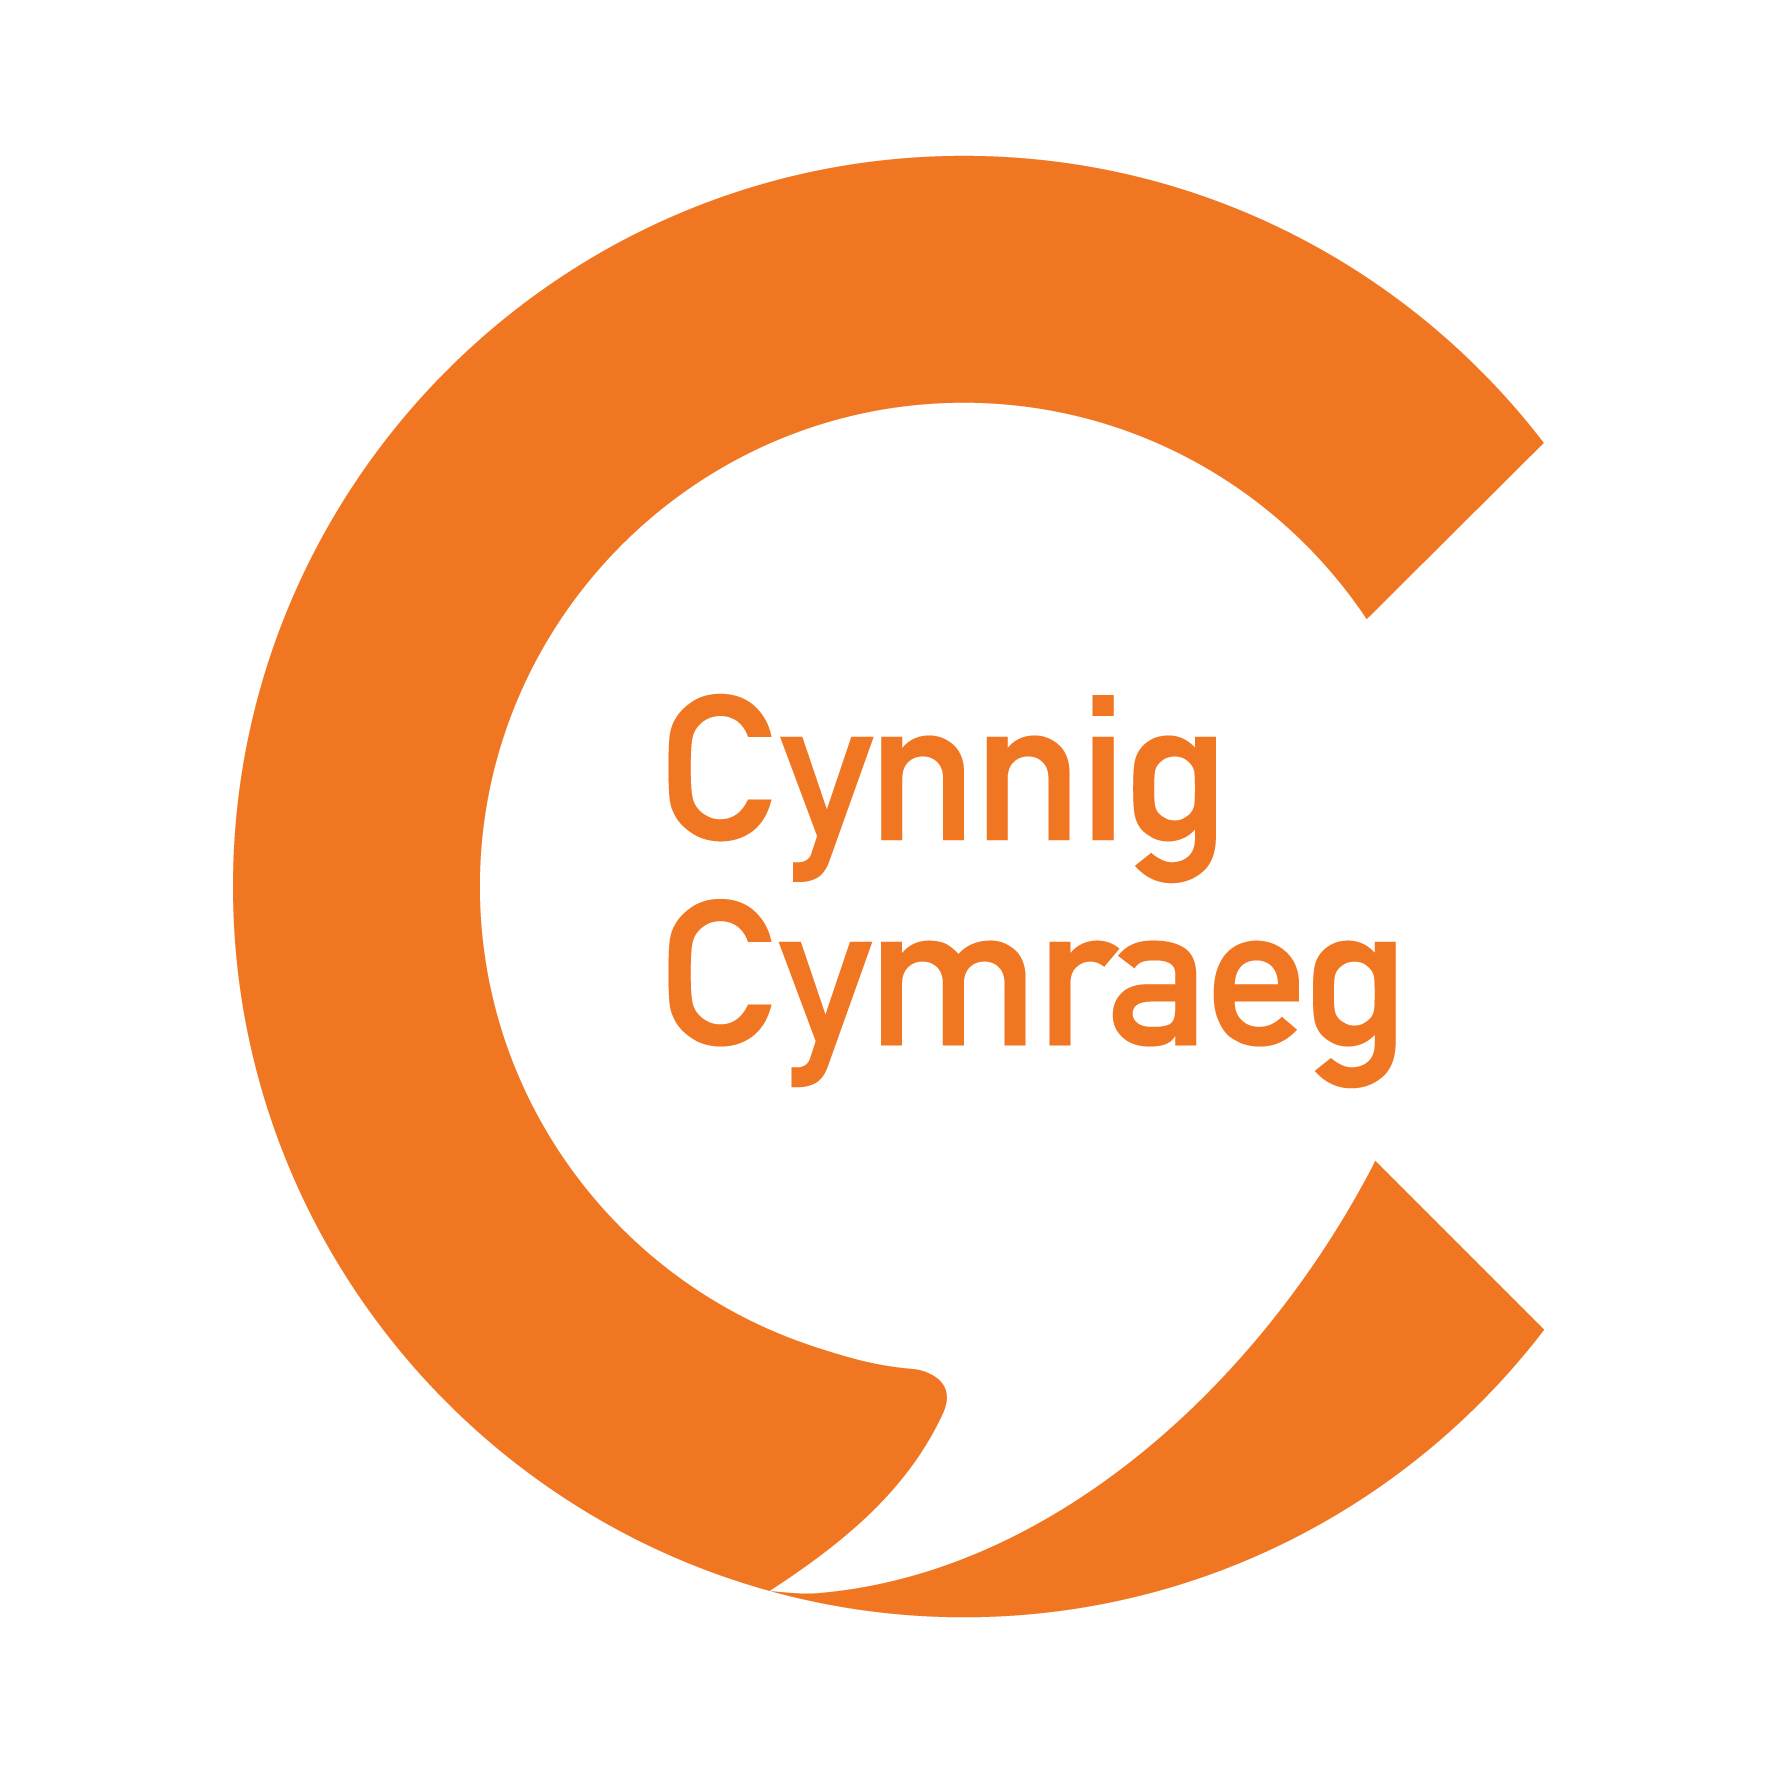 Cynnig Cymraeg logo